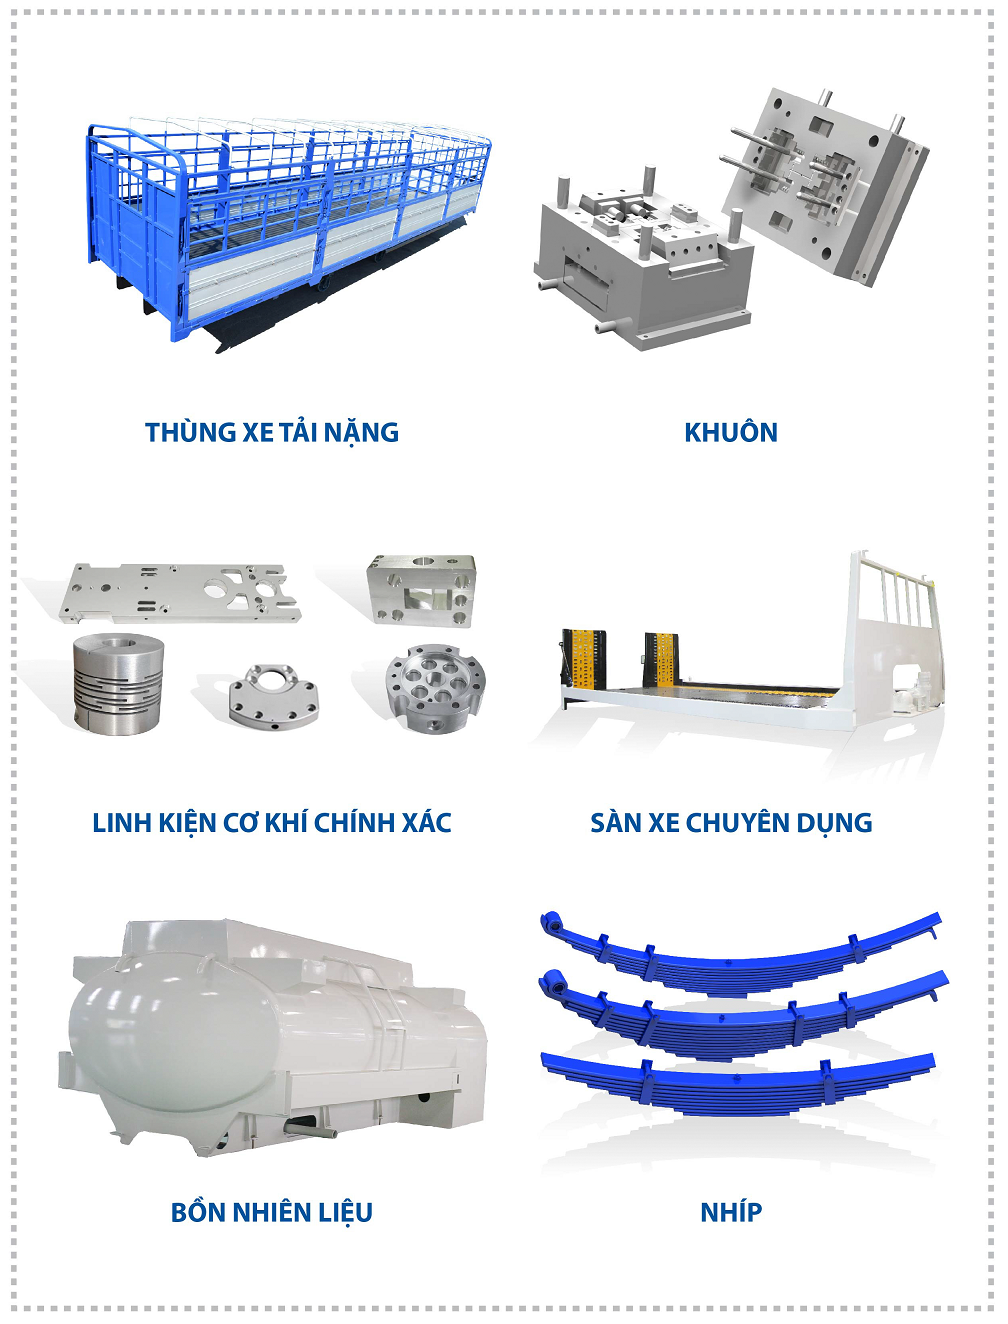 Một số sản phẩm linh kiện phụ tùng và cơ khí xuất khẩu của THACO